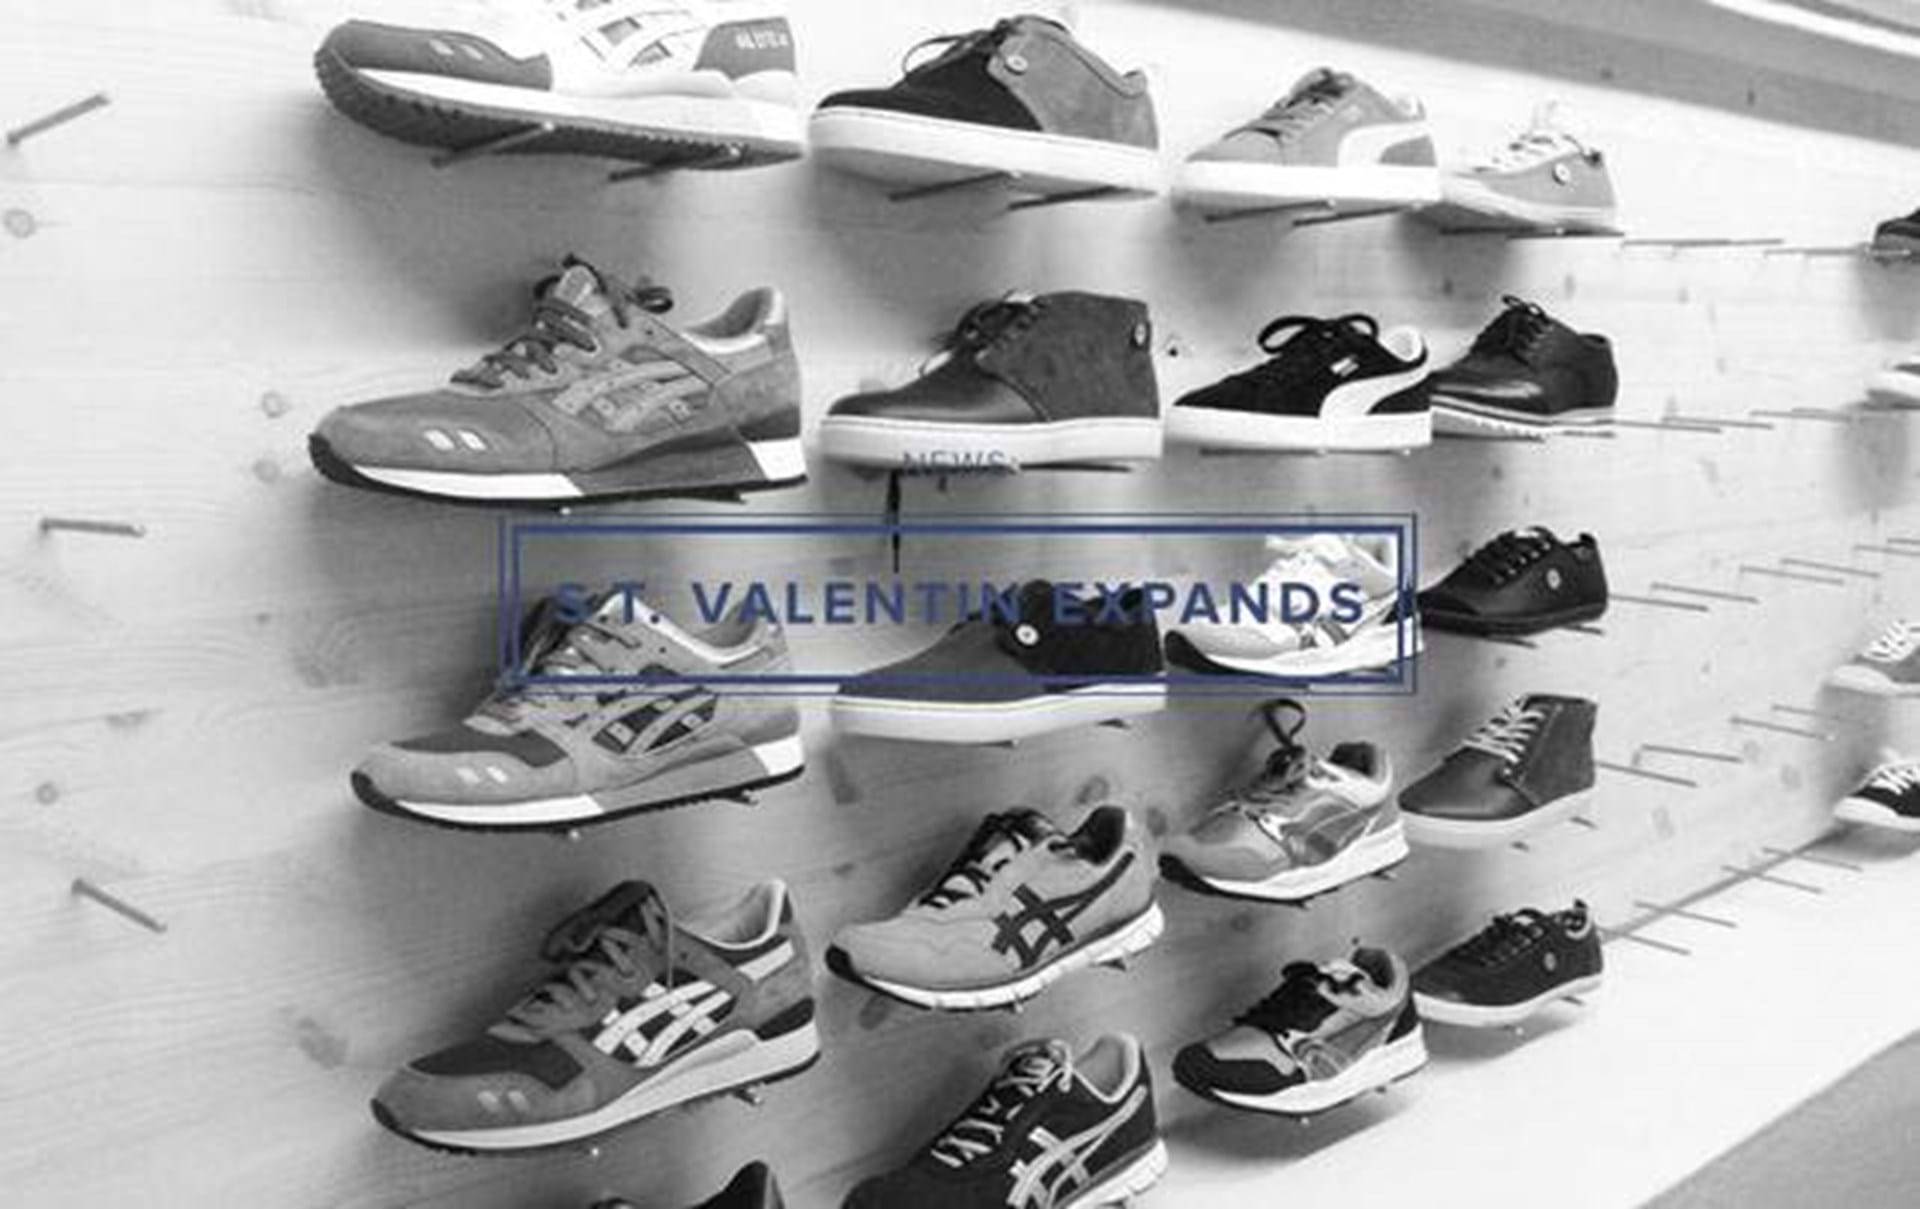 Vænne sig til hærge karton S.T. Valentin udvider med sko og accessories i kælderen - Euroman